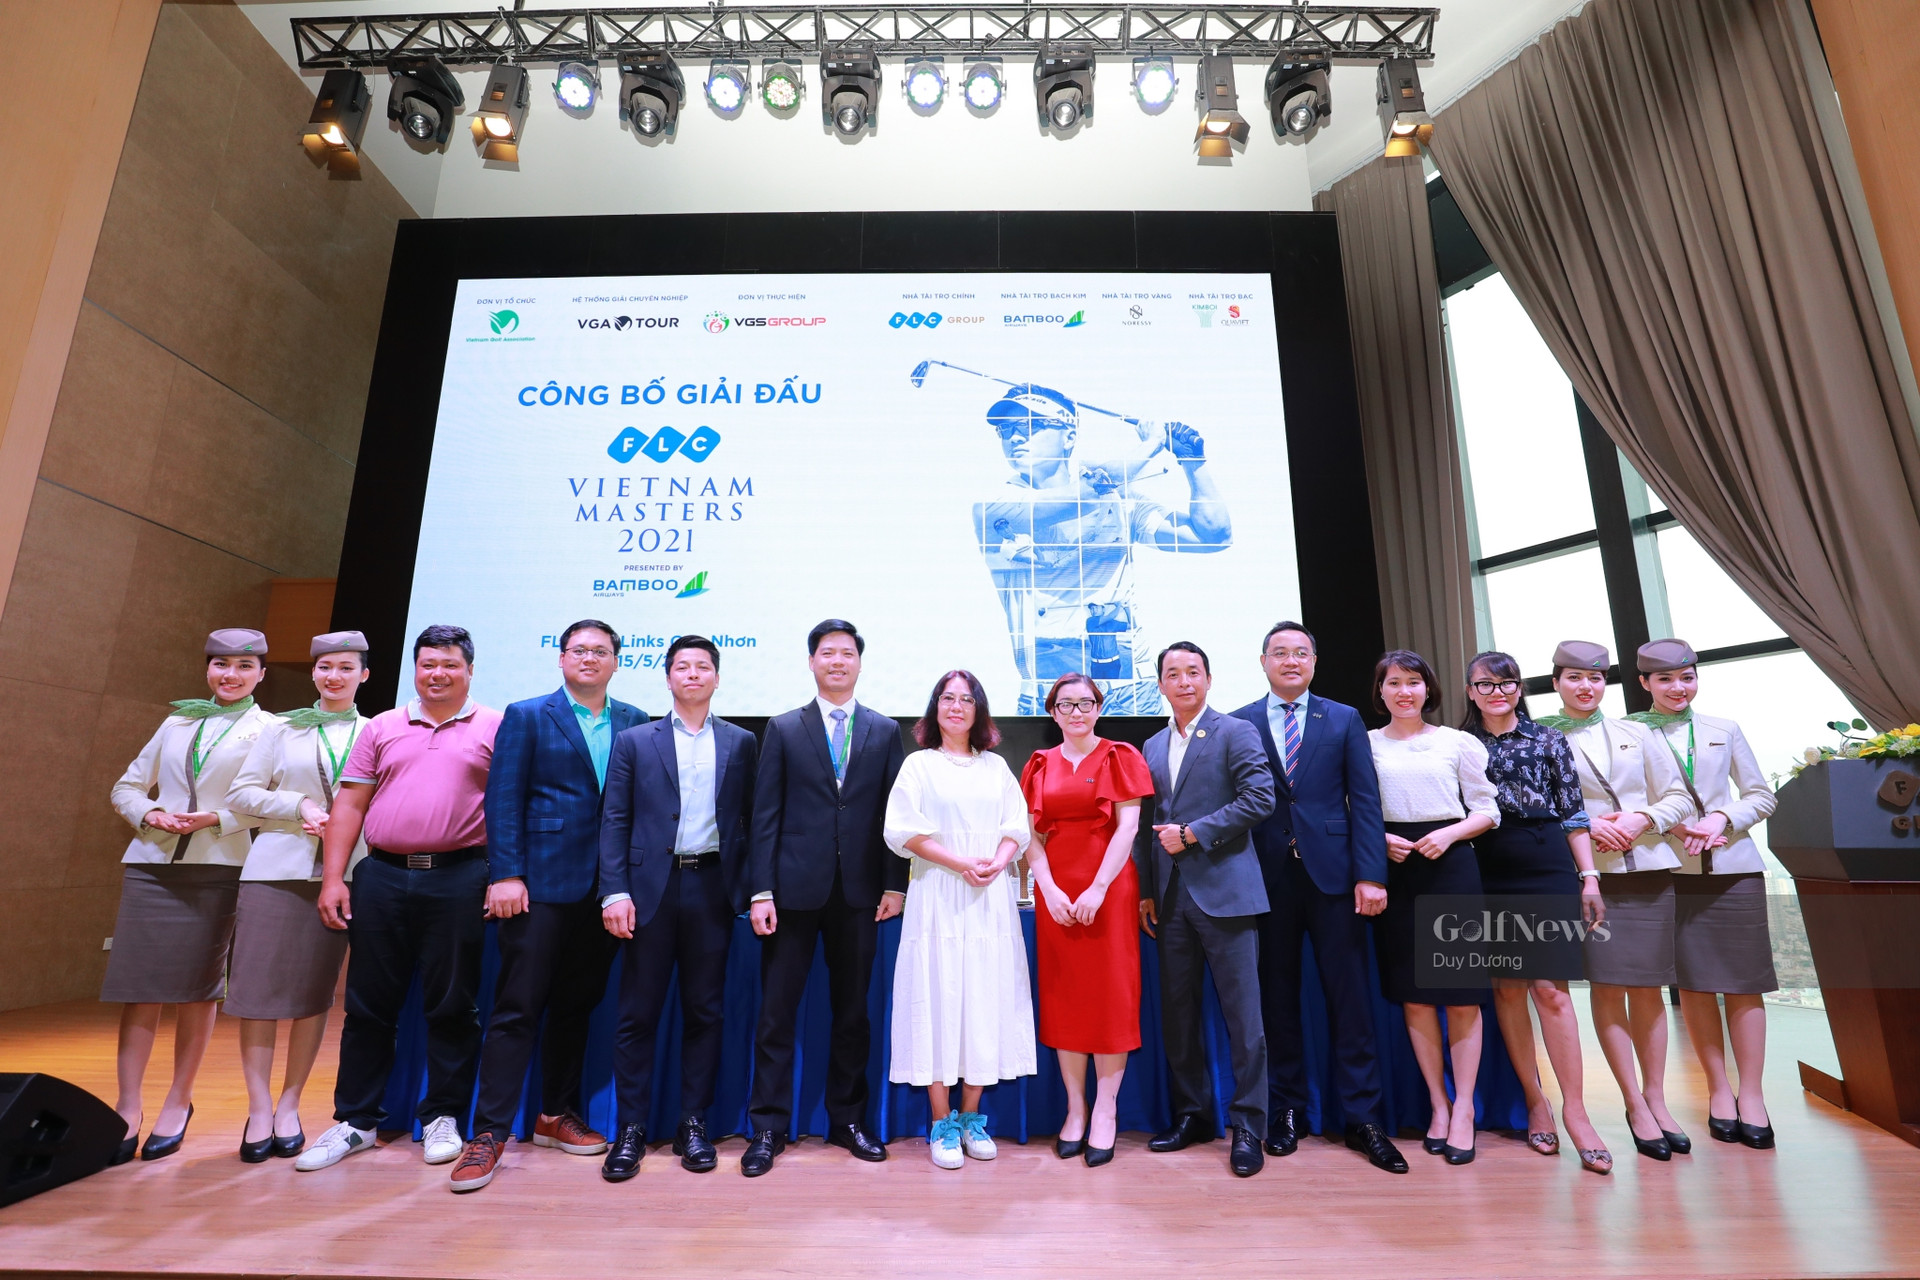 1 tỷ đồng tiền thưởng tại FLC Vietnam Masters 2021 presented by Bamboo Airways - Ảnh 1.